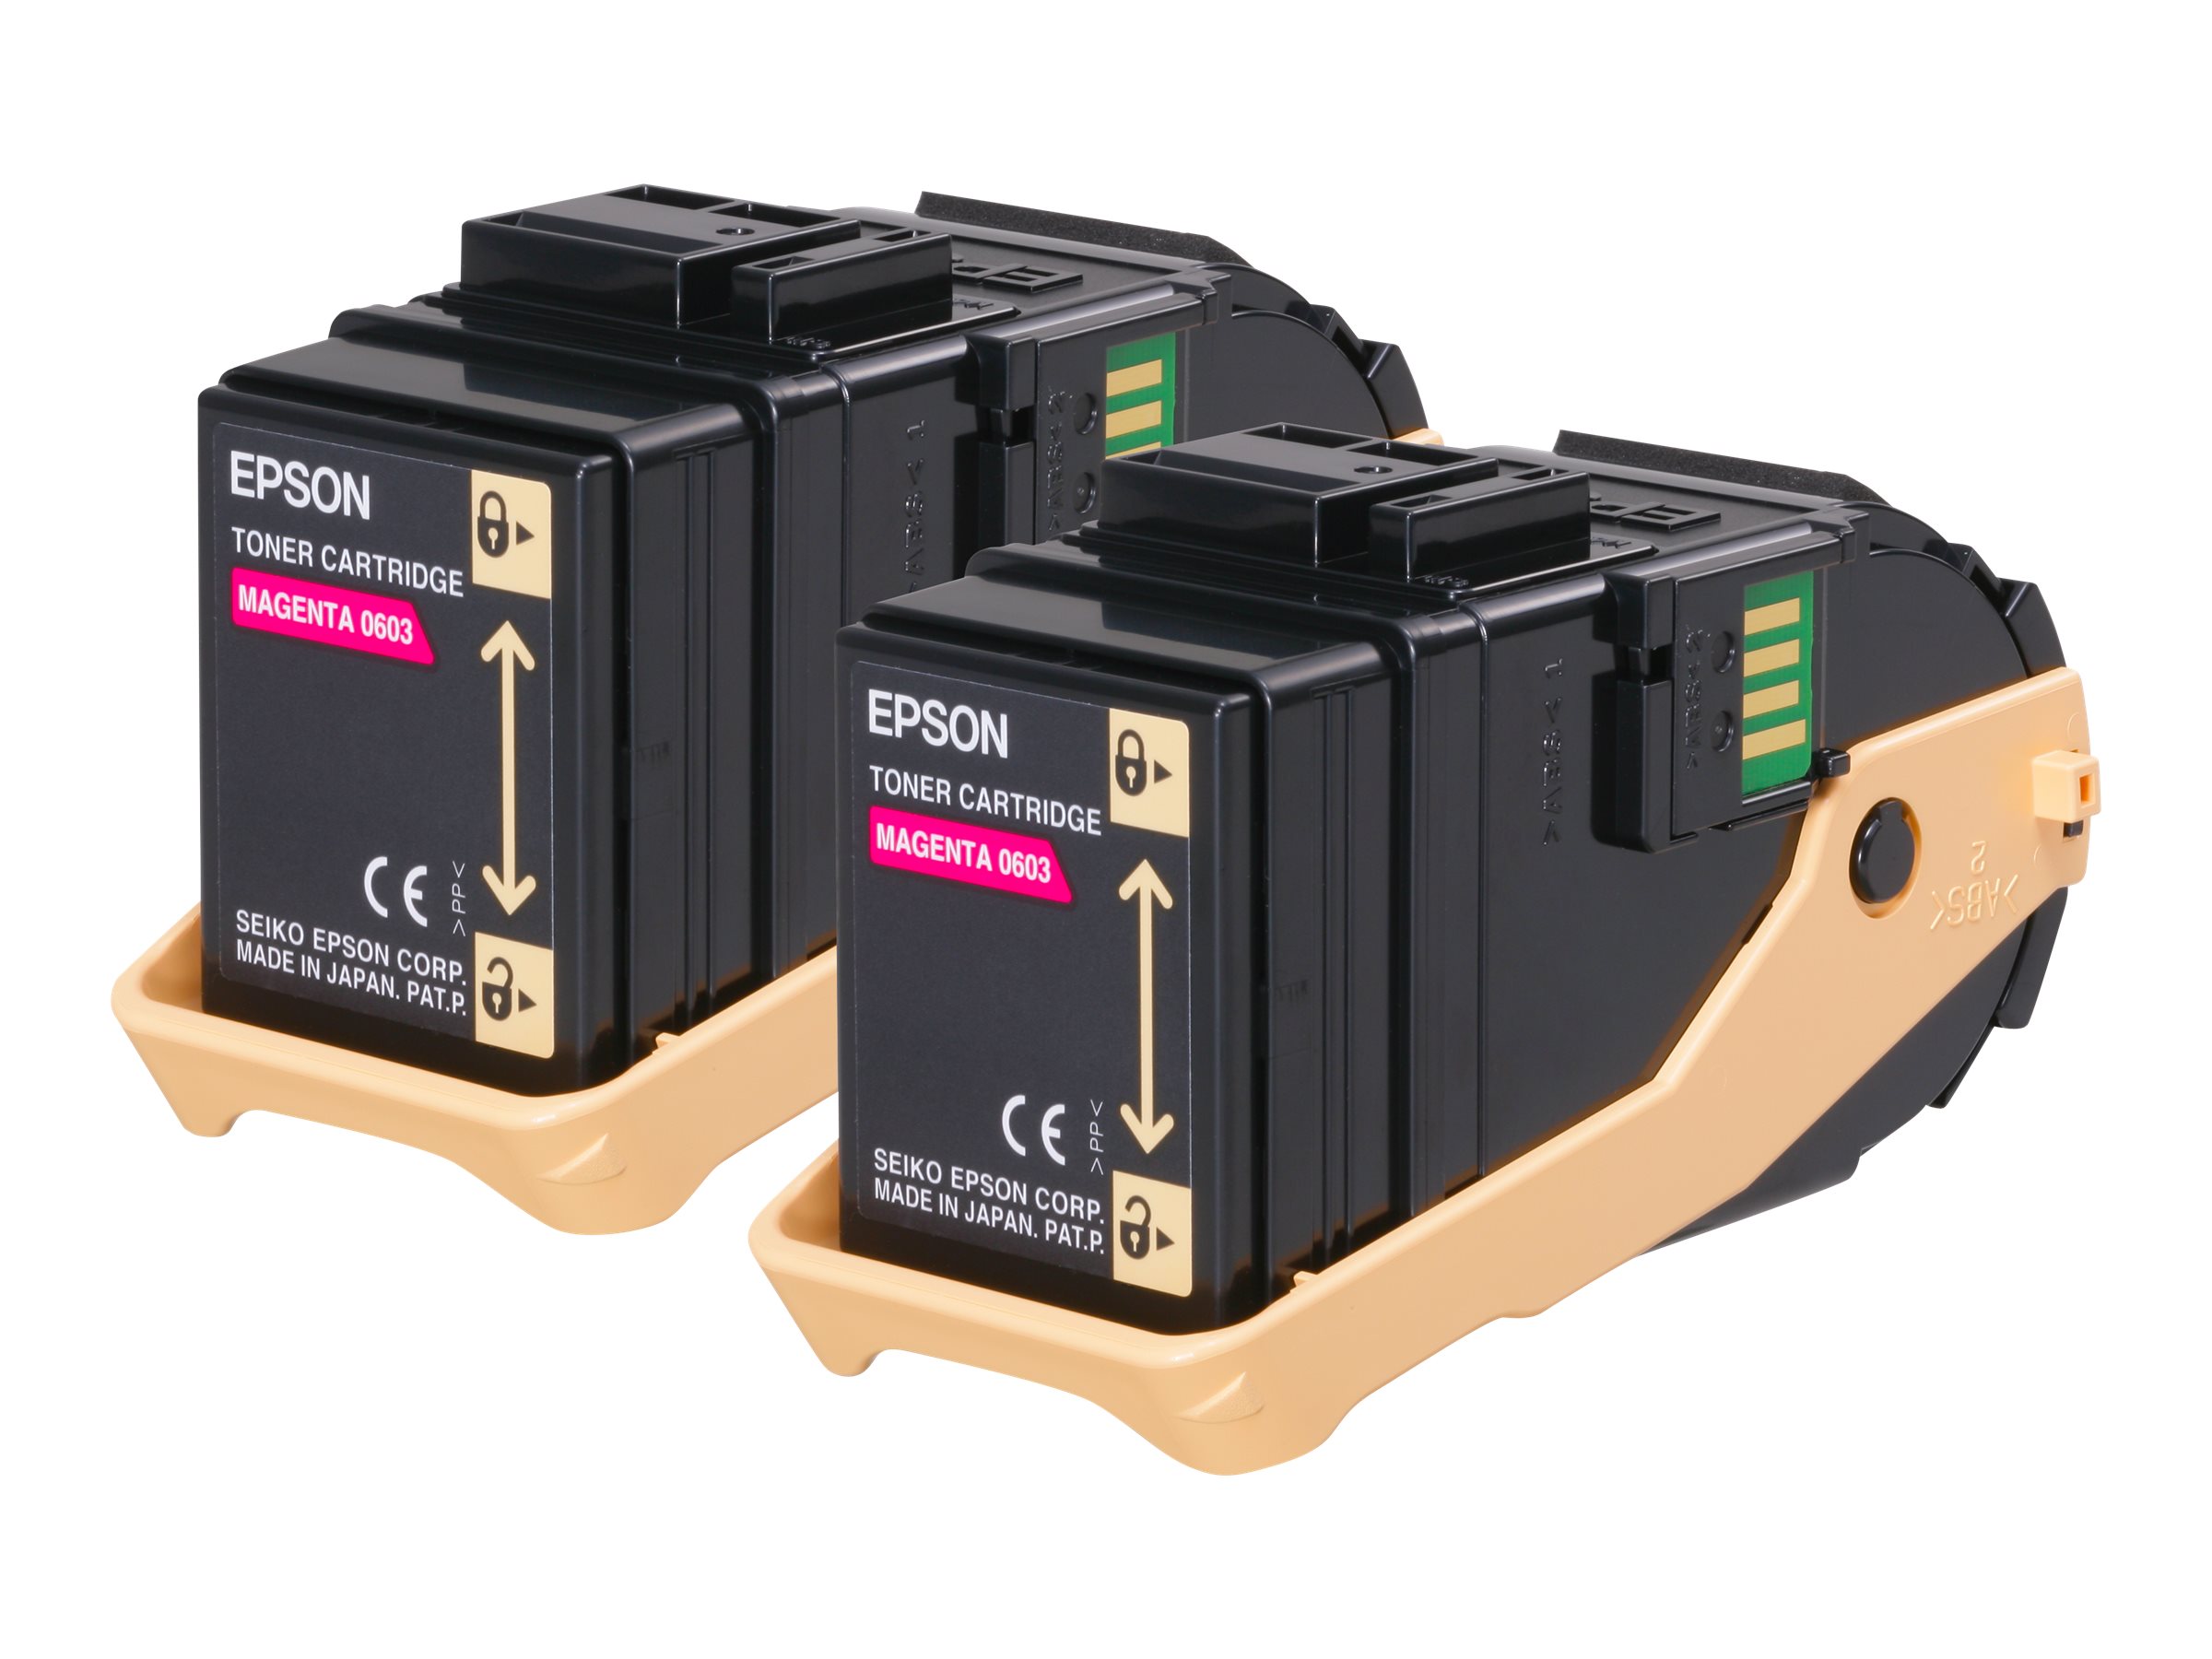 Epson Double Pack - Pack de 2 - magenta - original - cartouche de toner - pour Epson AL-C9500DN; AcuLaser C9300D2TN, C9300D3TNC, C9300DN, C9300DTN, C9300N, C9300TN - C13S050607 - Cartouches de toner Epson